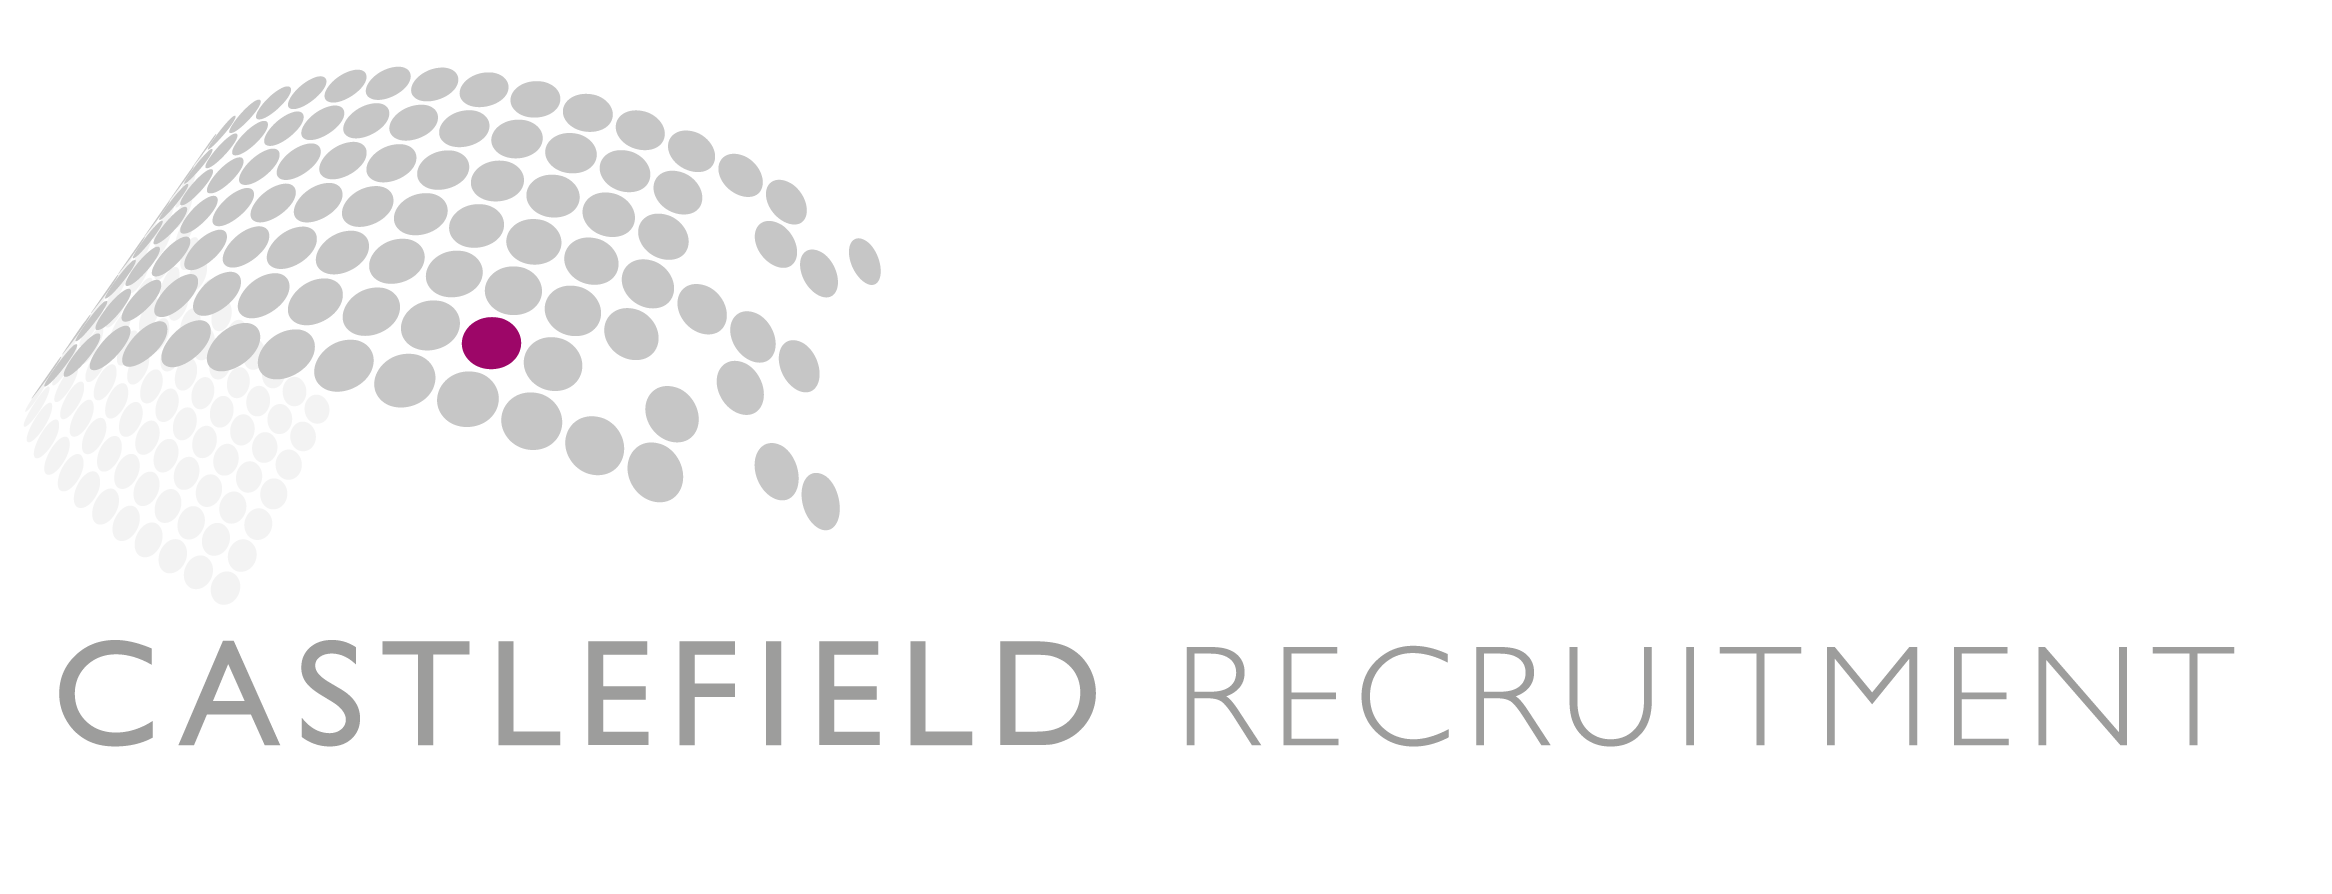 Castle Recruitment Logo png